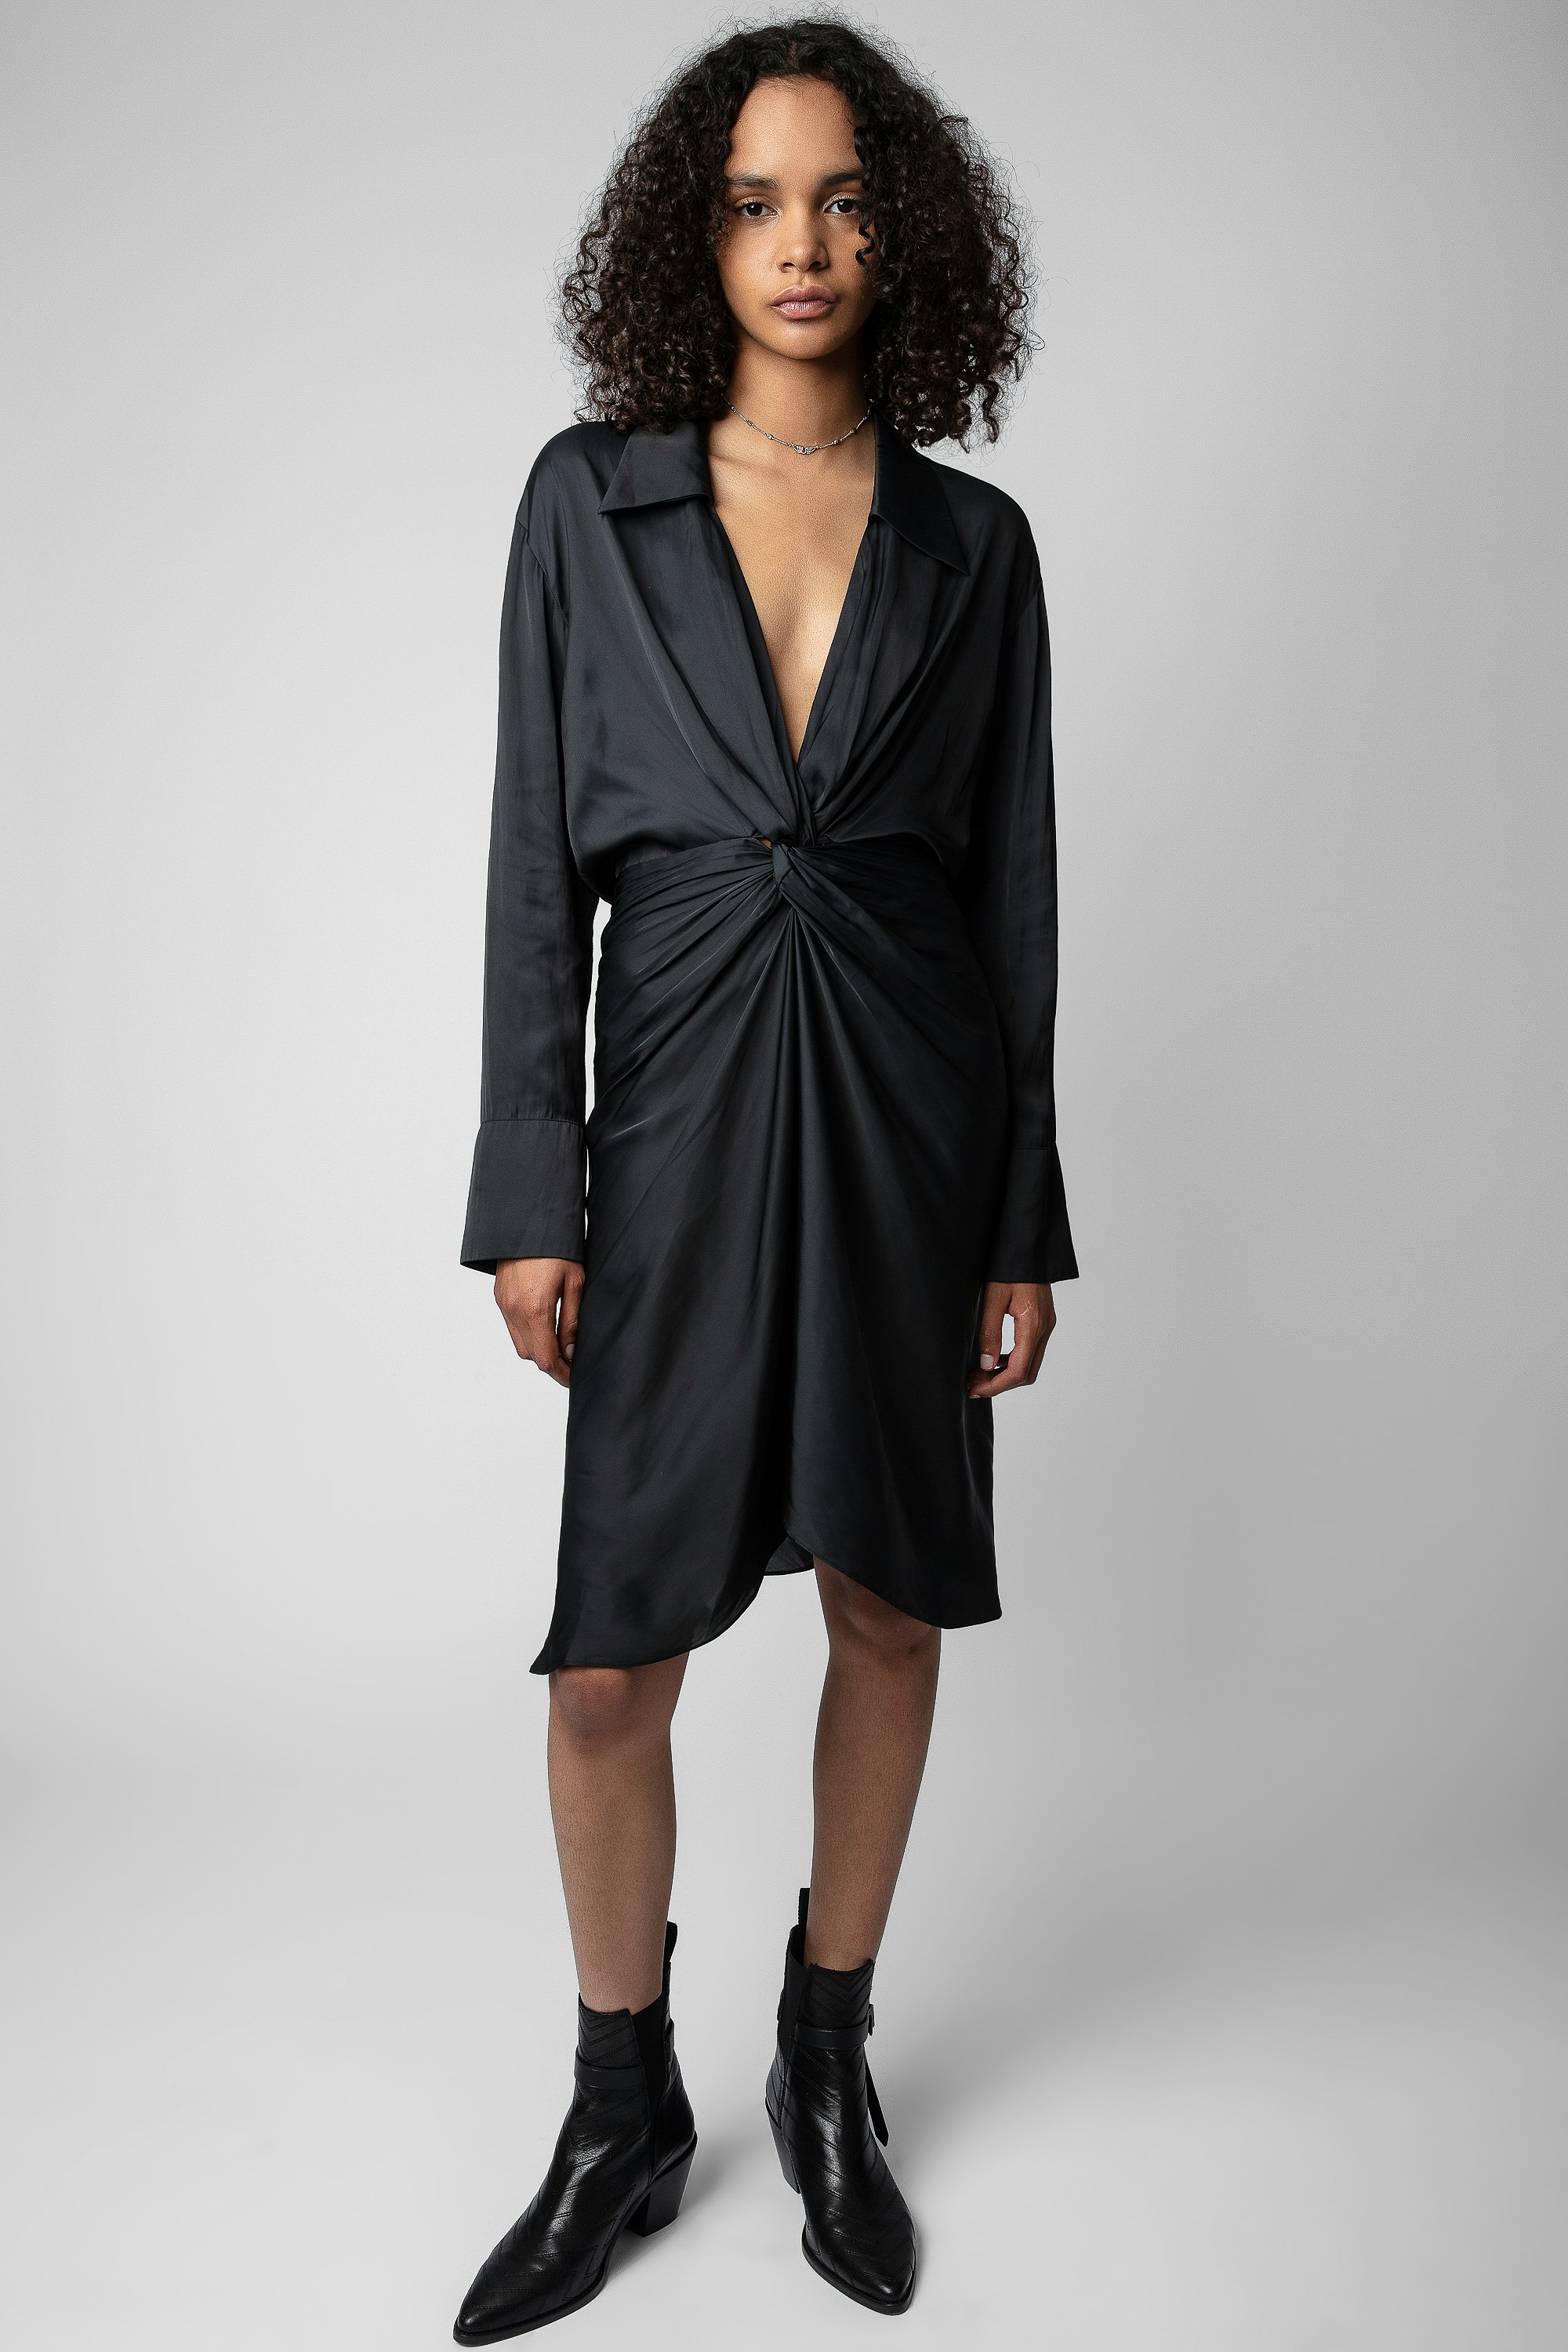 Vestido de Satén Rozo - Vestido corto negro de satén, anudado y drapeado, para mujer.